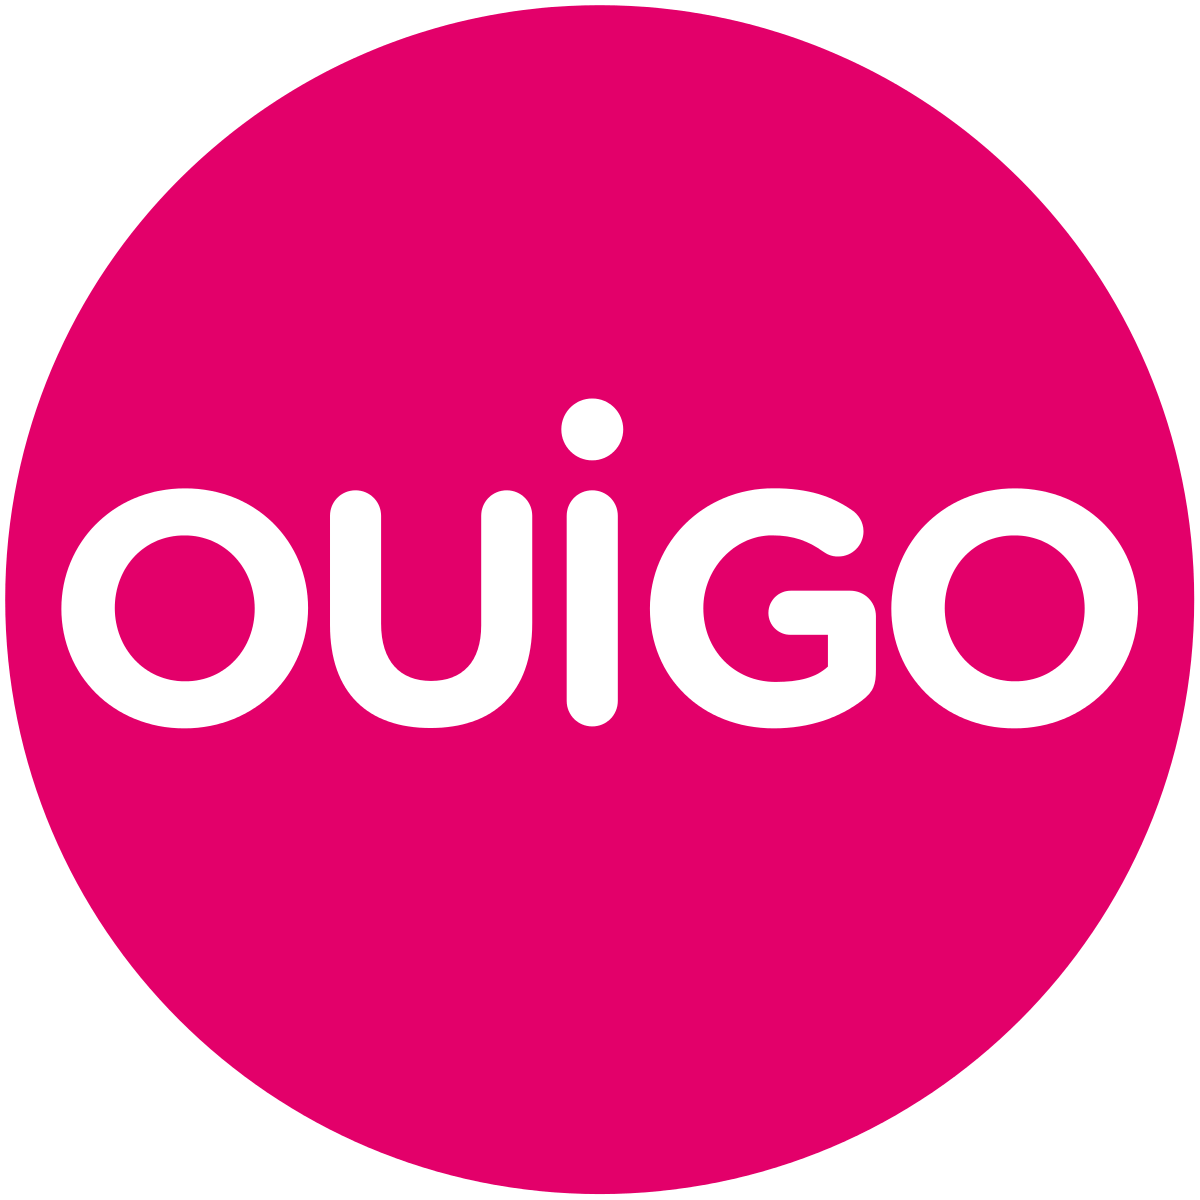 OUIGO logo